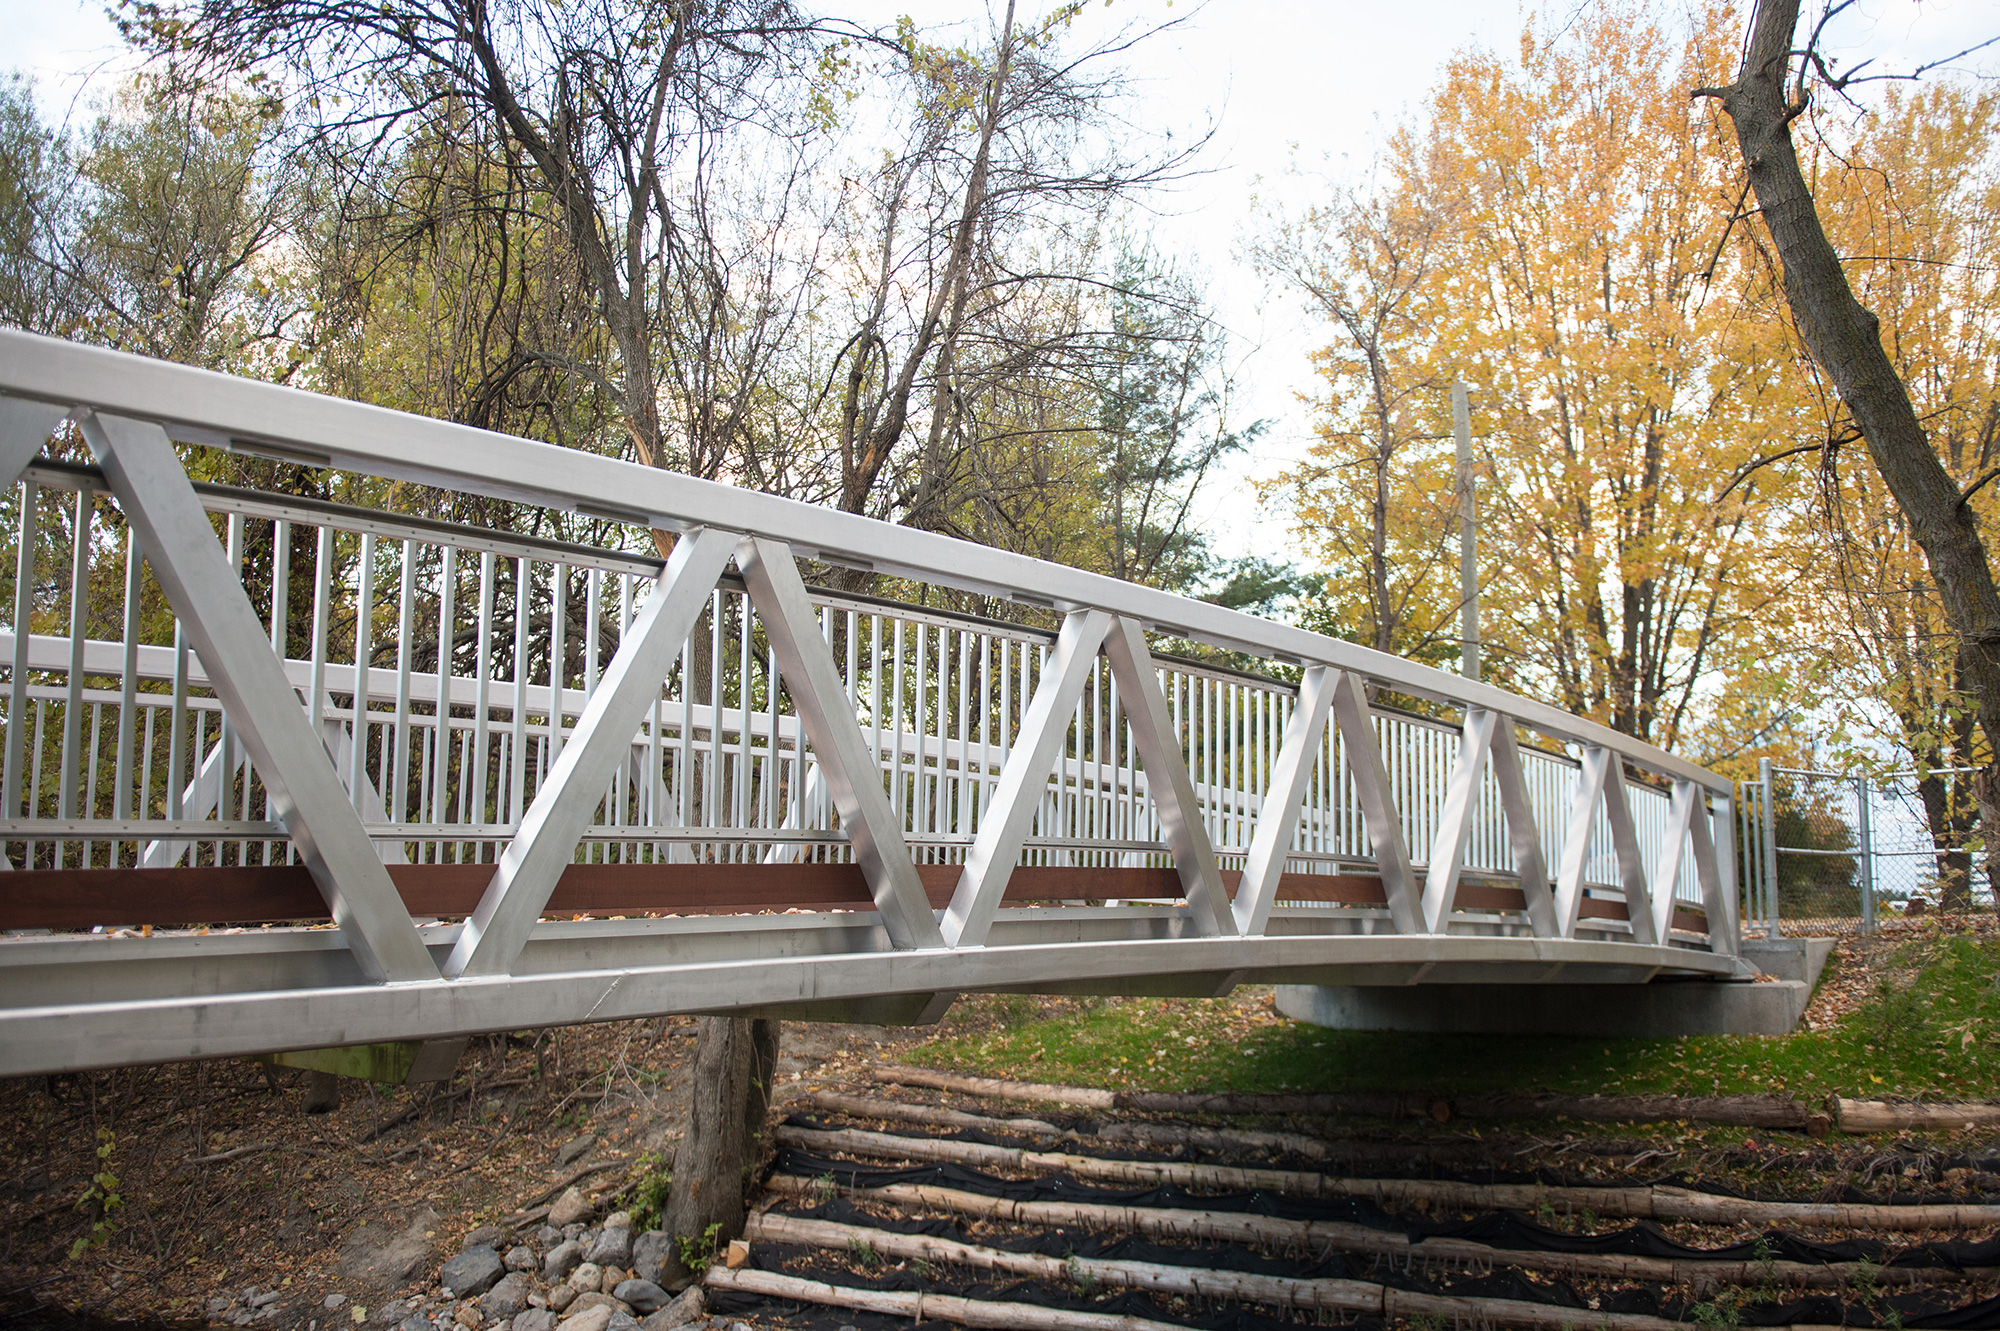 Custom aluminum pedestrian bridge with natural wood features in Canada